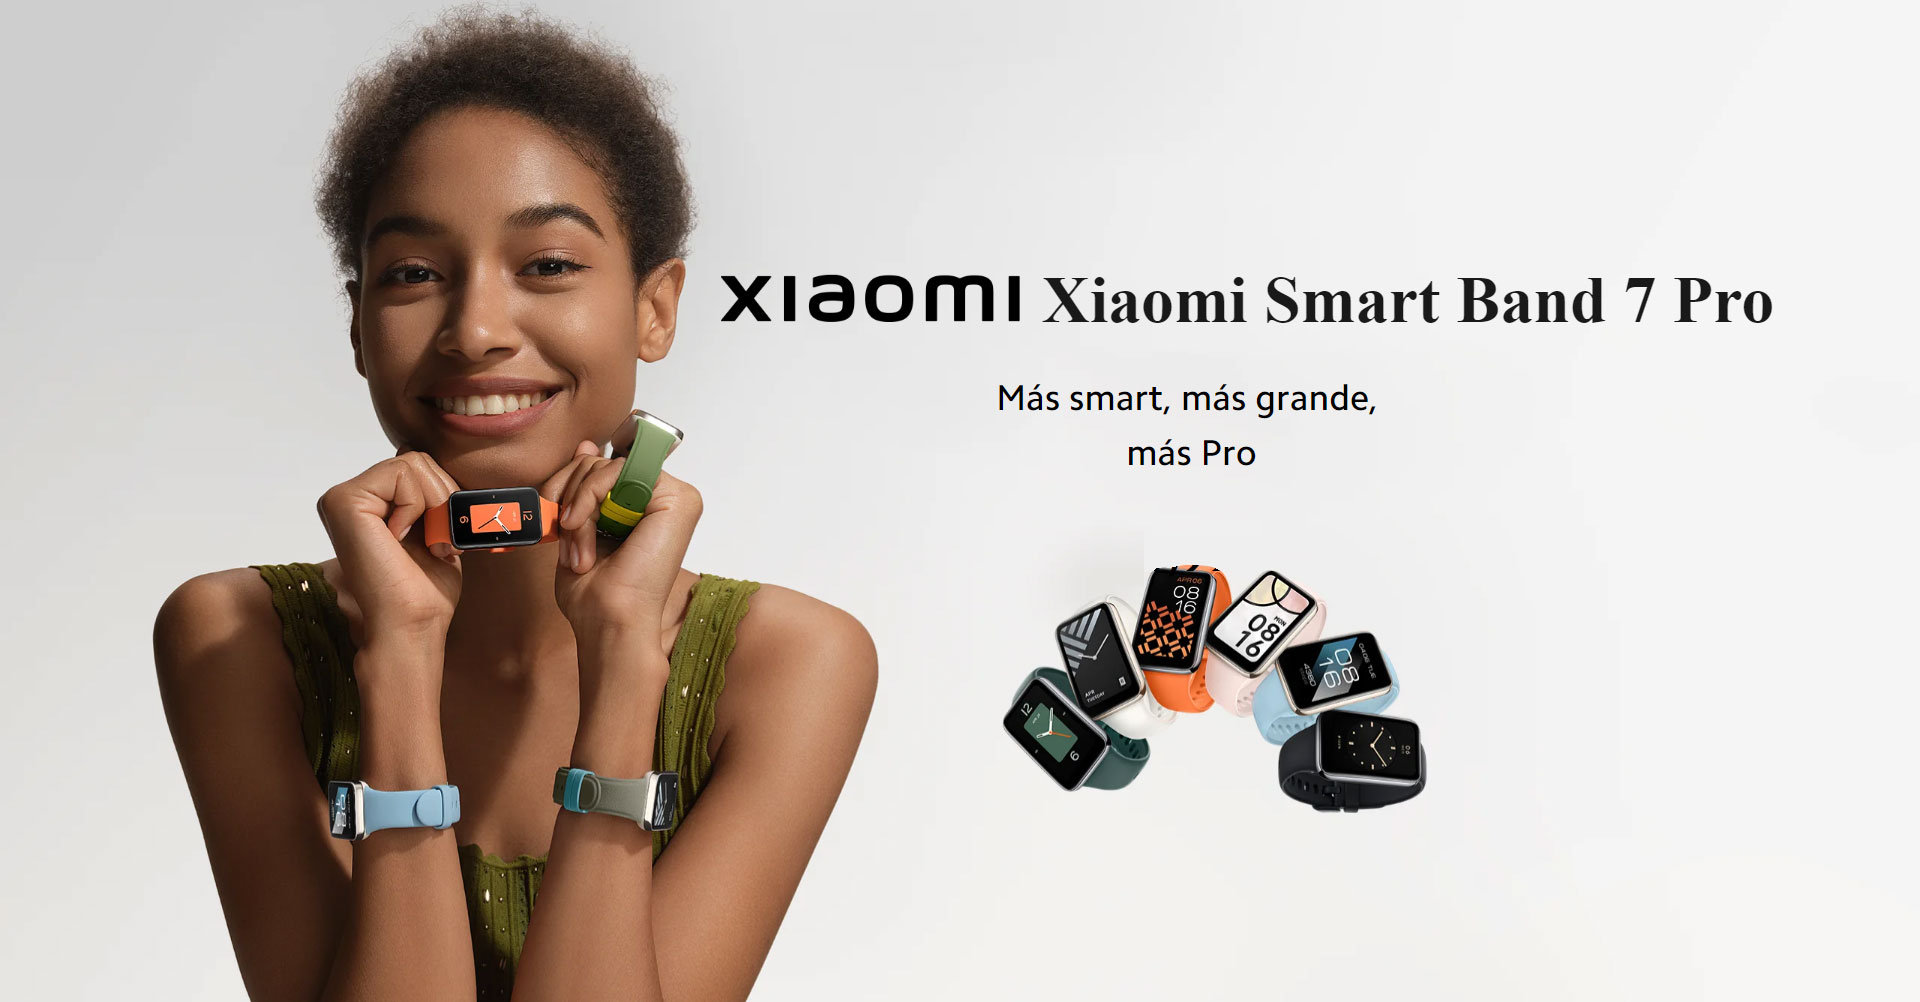 Pulsera Xiaomi Mi Smart Band 7 Pro Con GPS , Spo2 - M2141B1 